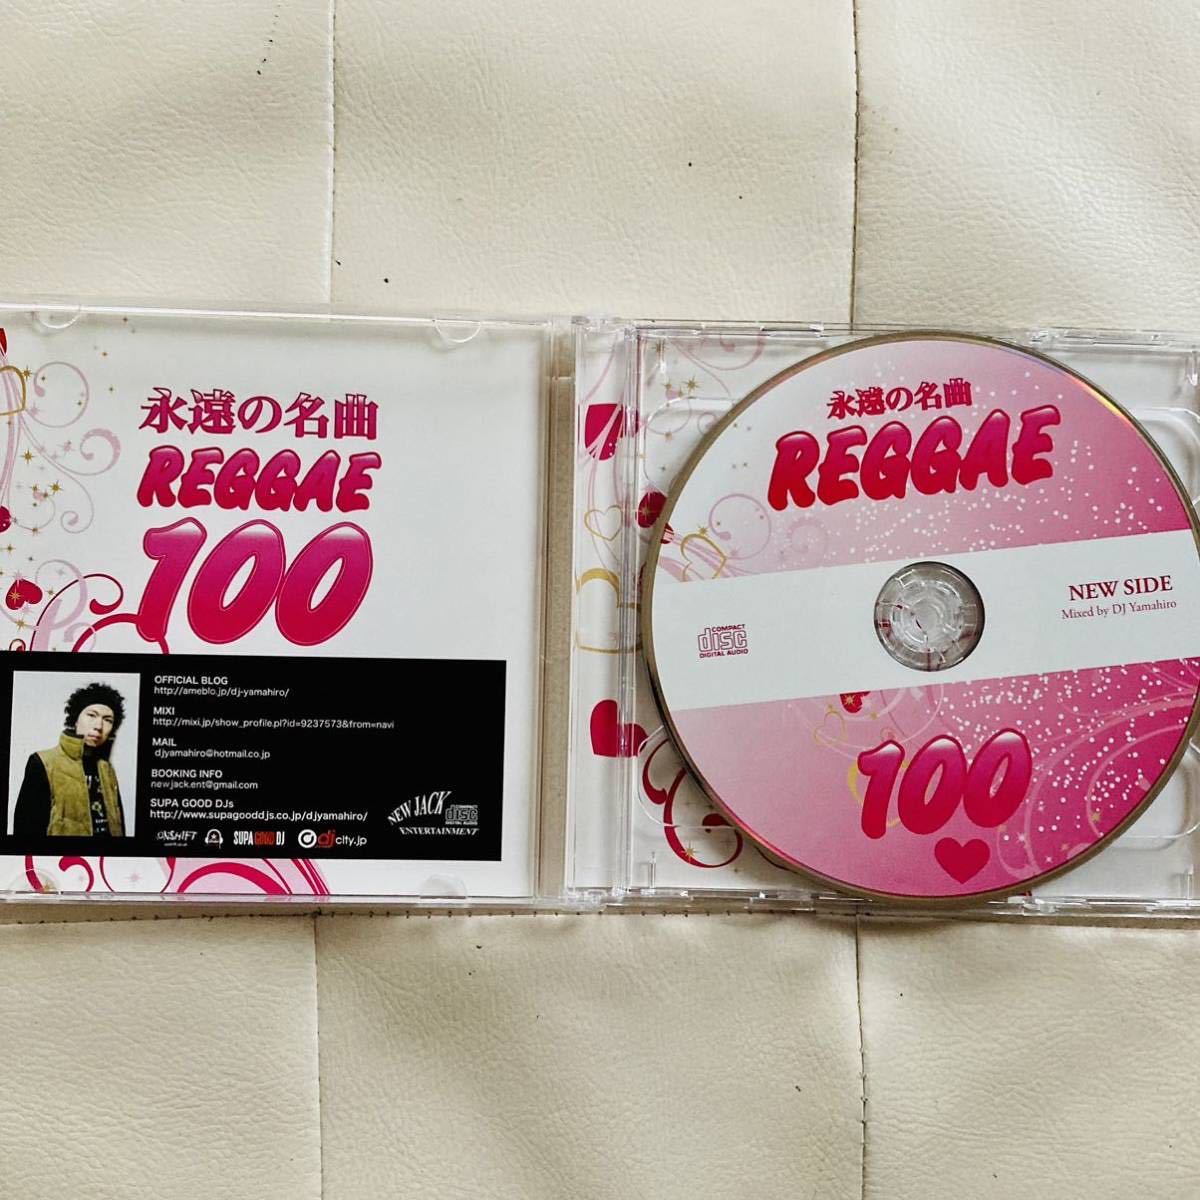 送料無料 / DJ YAMAHIRO / 永遠の名曲REGGAE 100 / 2枚組 MIX / レゲエミックス